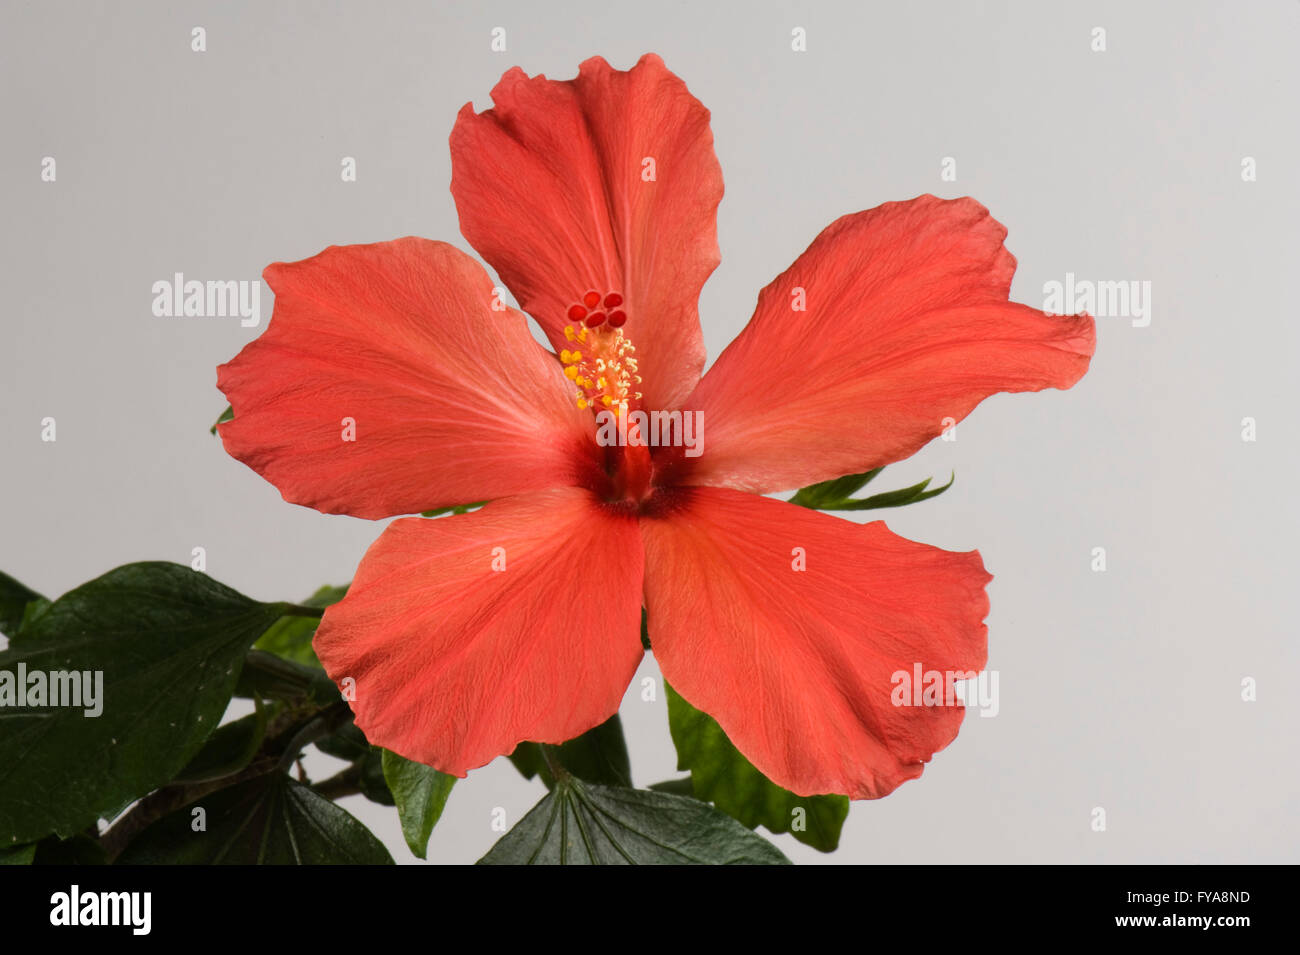 Rote Blume eine Zimmerpflanze Hibiskus, Hibiscus Rosa-Sinensis, zeigt Stigma und Staubbeutel Stockfoto